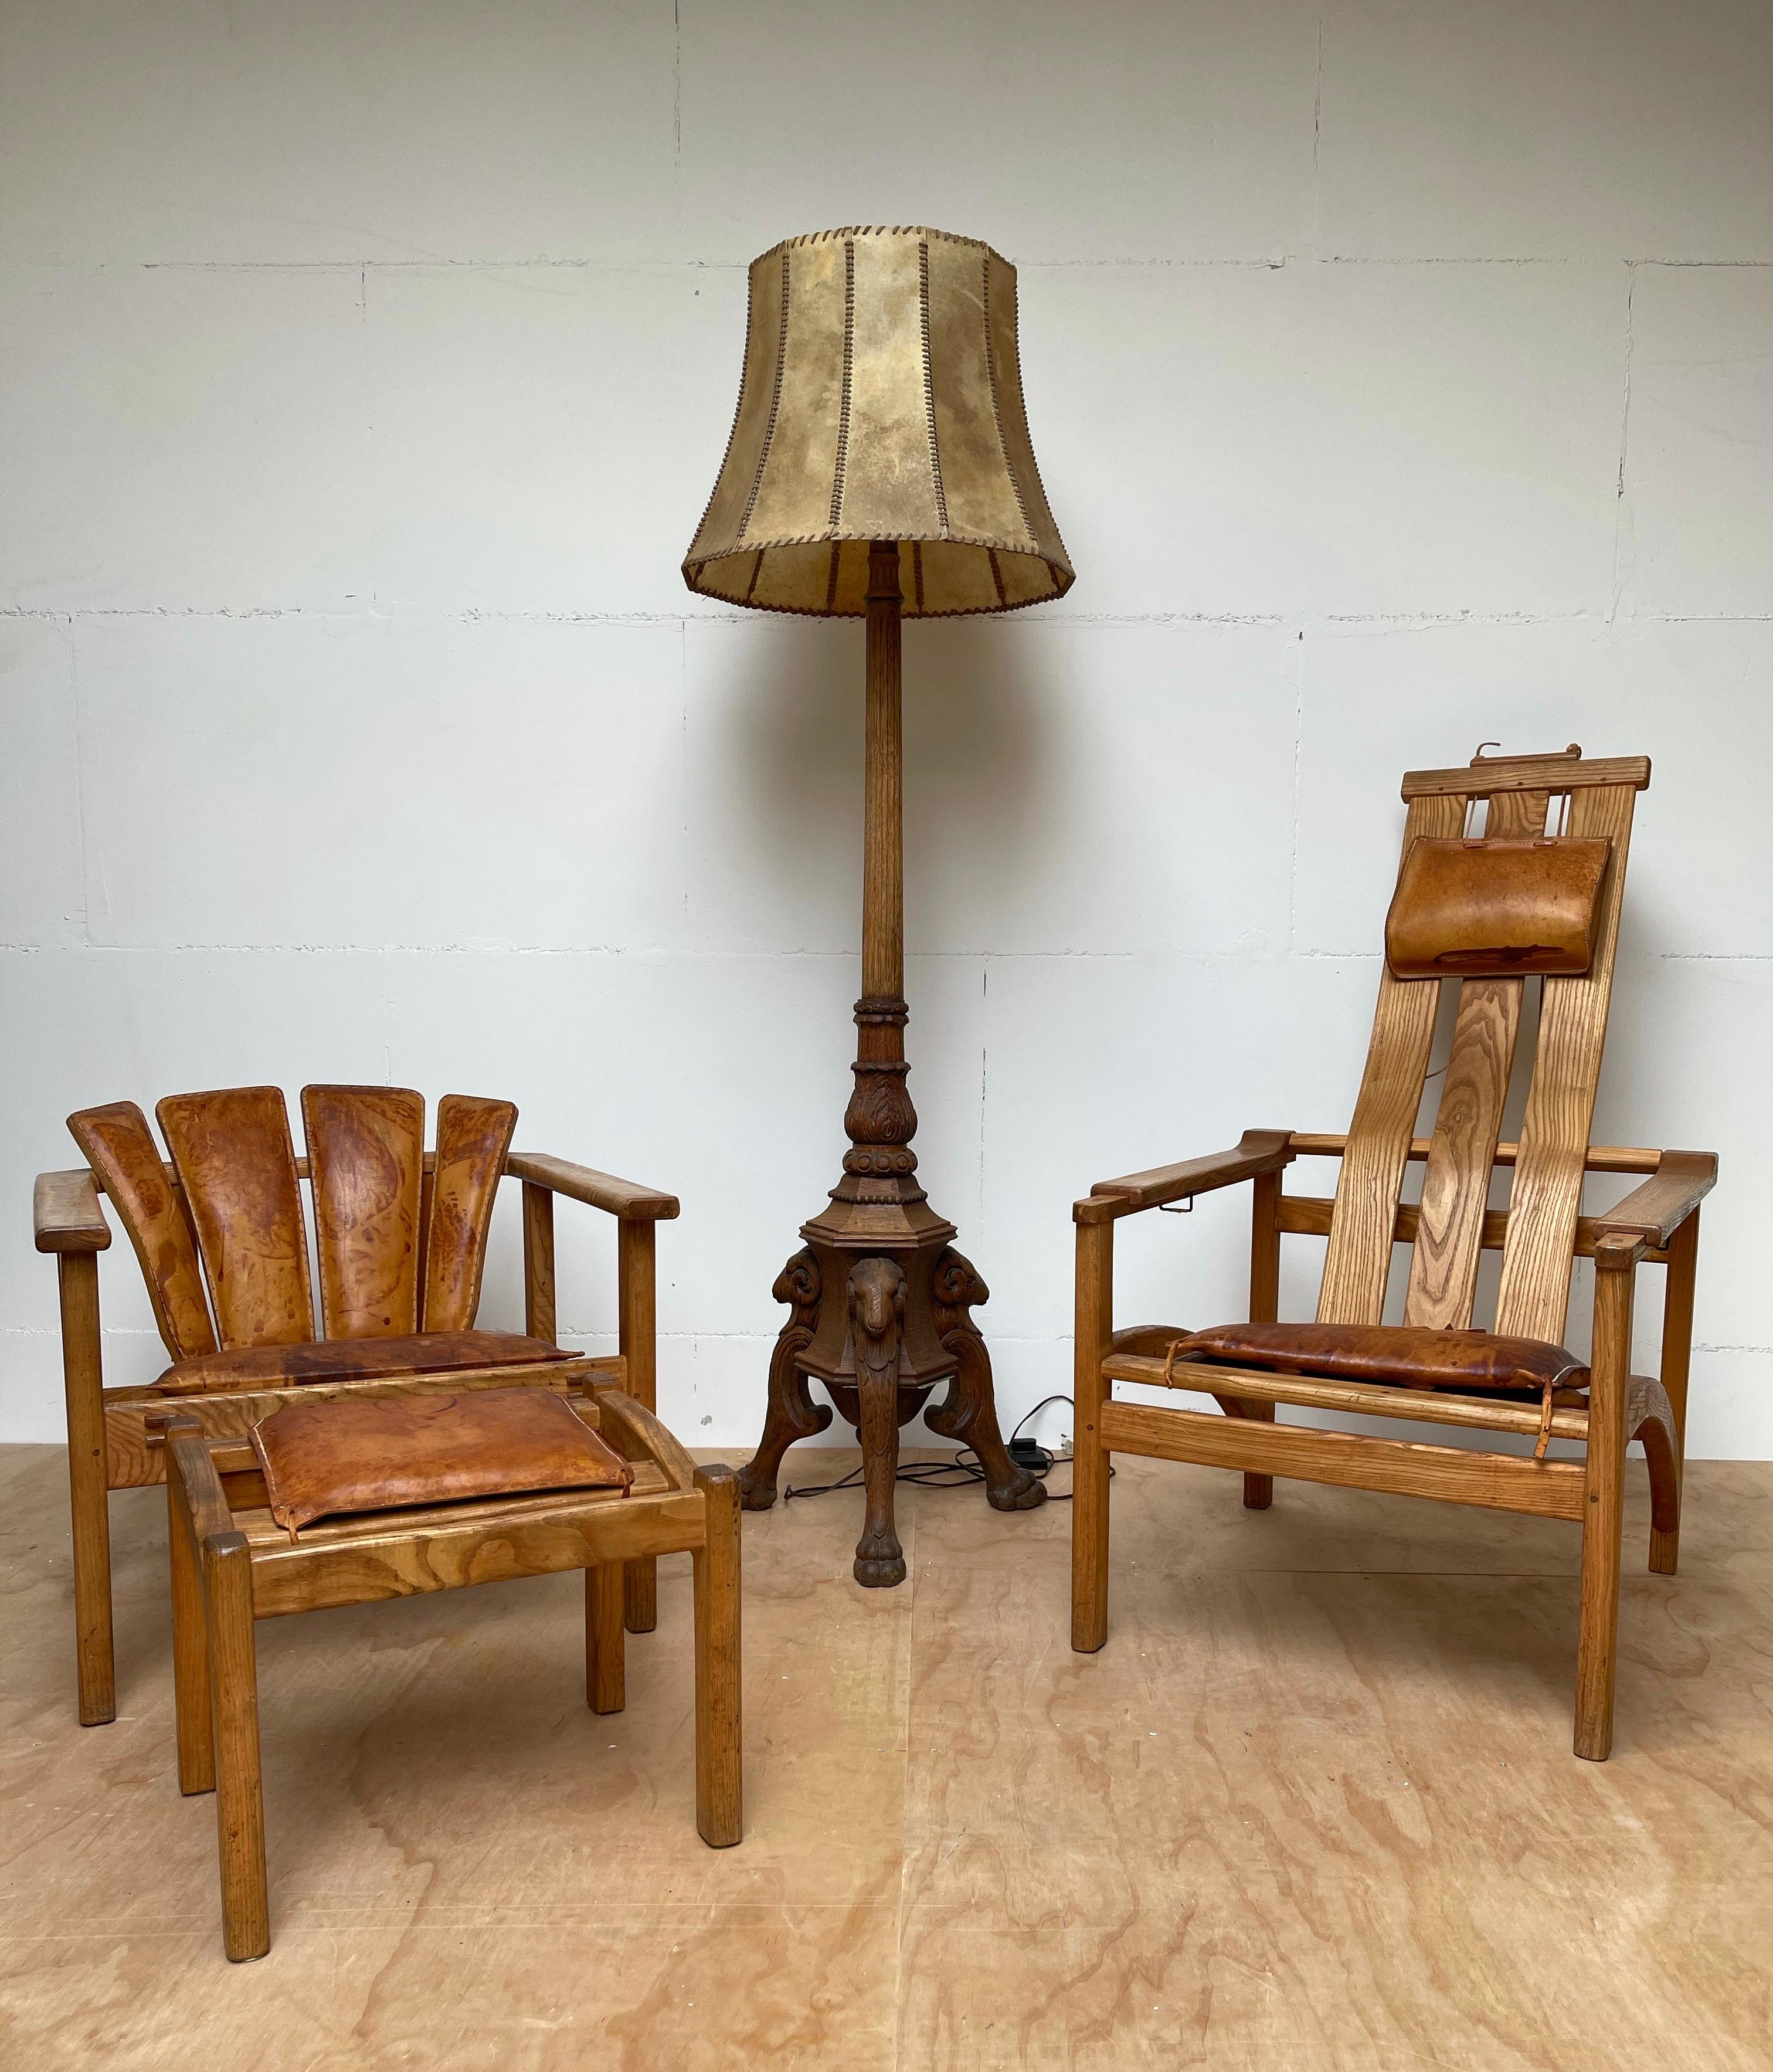 Ein bemerkenswertes Set von Stühlen für einen einzigartigen Lounge-Bereich.

Wenn Sie auf der Suche nach seltenen und stilvollen Möbeln sind, um Ihren Wohnraum zu verschönern, dann könnte dieses wunderbare Set von Stühlen mit Ottomane bald Ihnen